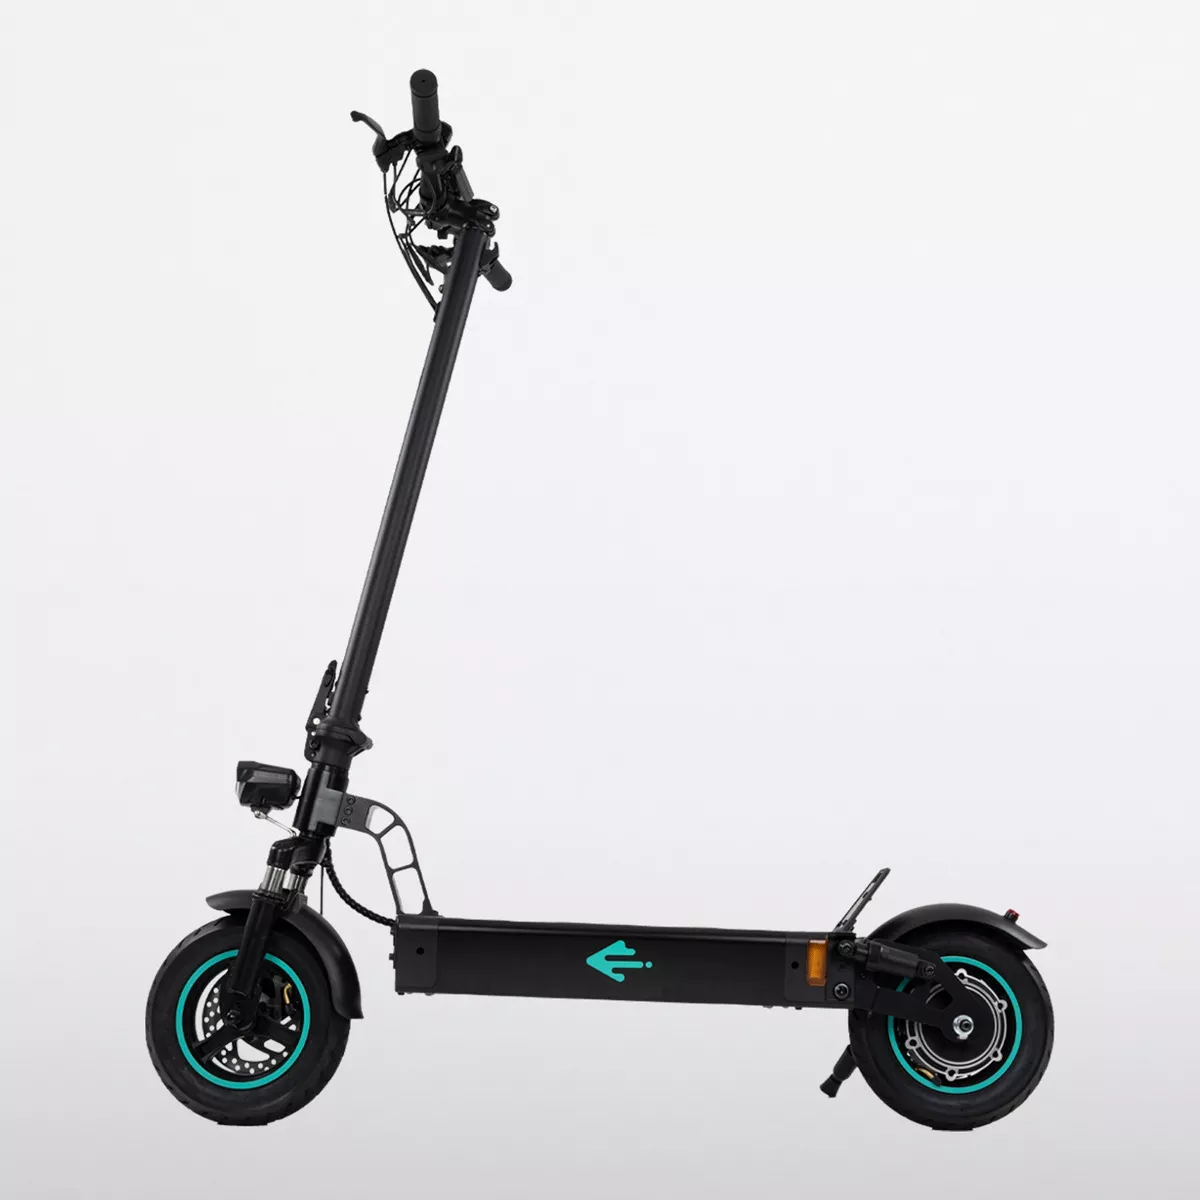 Segunda imagen para búsqueda de scooter electrico con asiento